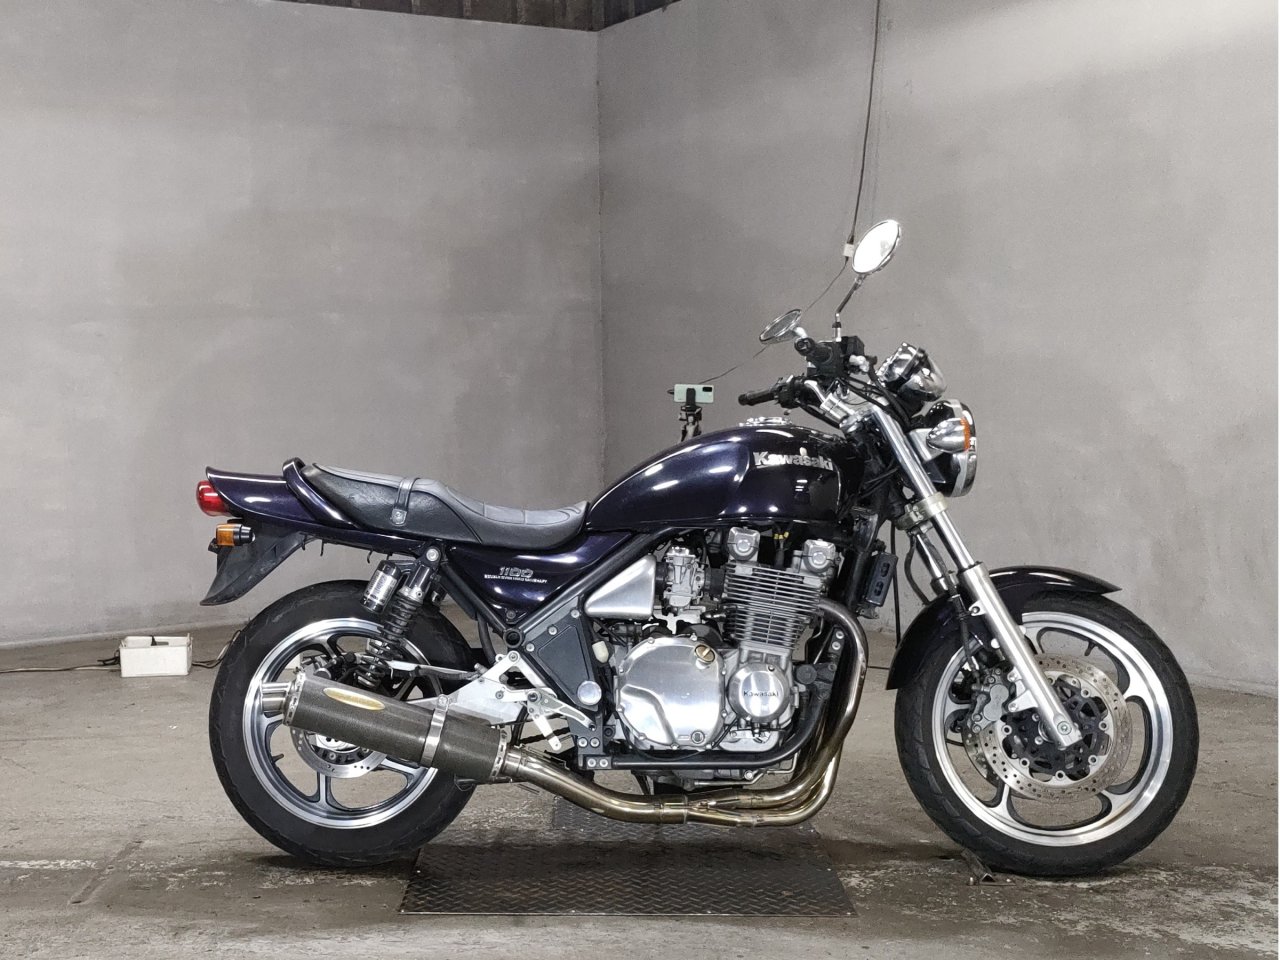 Kawasaki Zephyr 1100 - Adamoto - Motorcycles from Japan